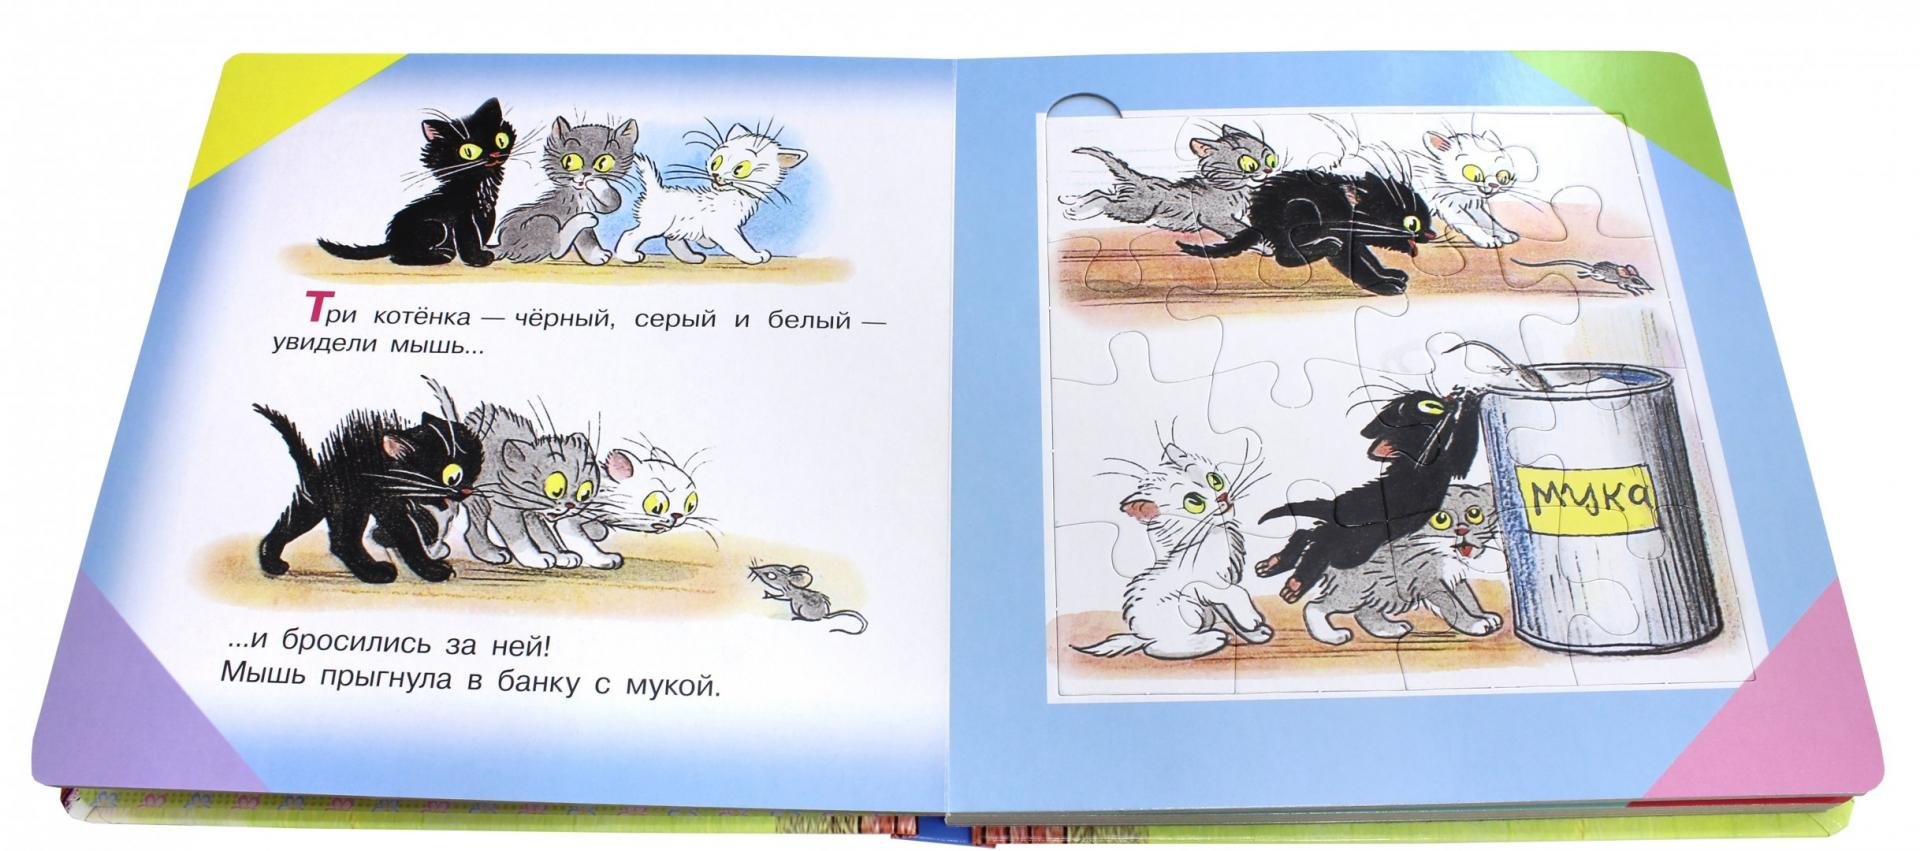 Федин котенок 3 полностью. Сутеев 3 котенка. Три котёнка, Сутеев в.г.. Сутеев иллюстрации три котенка.